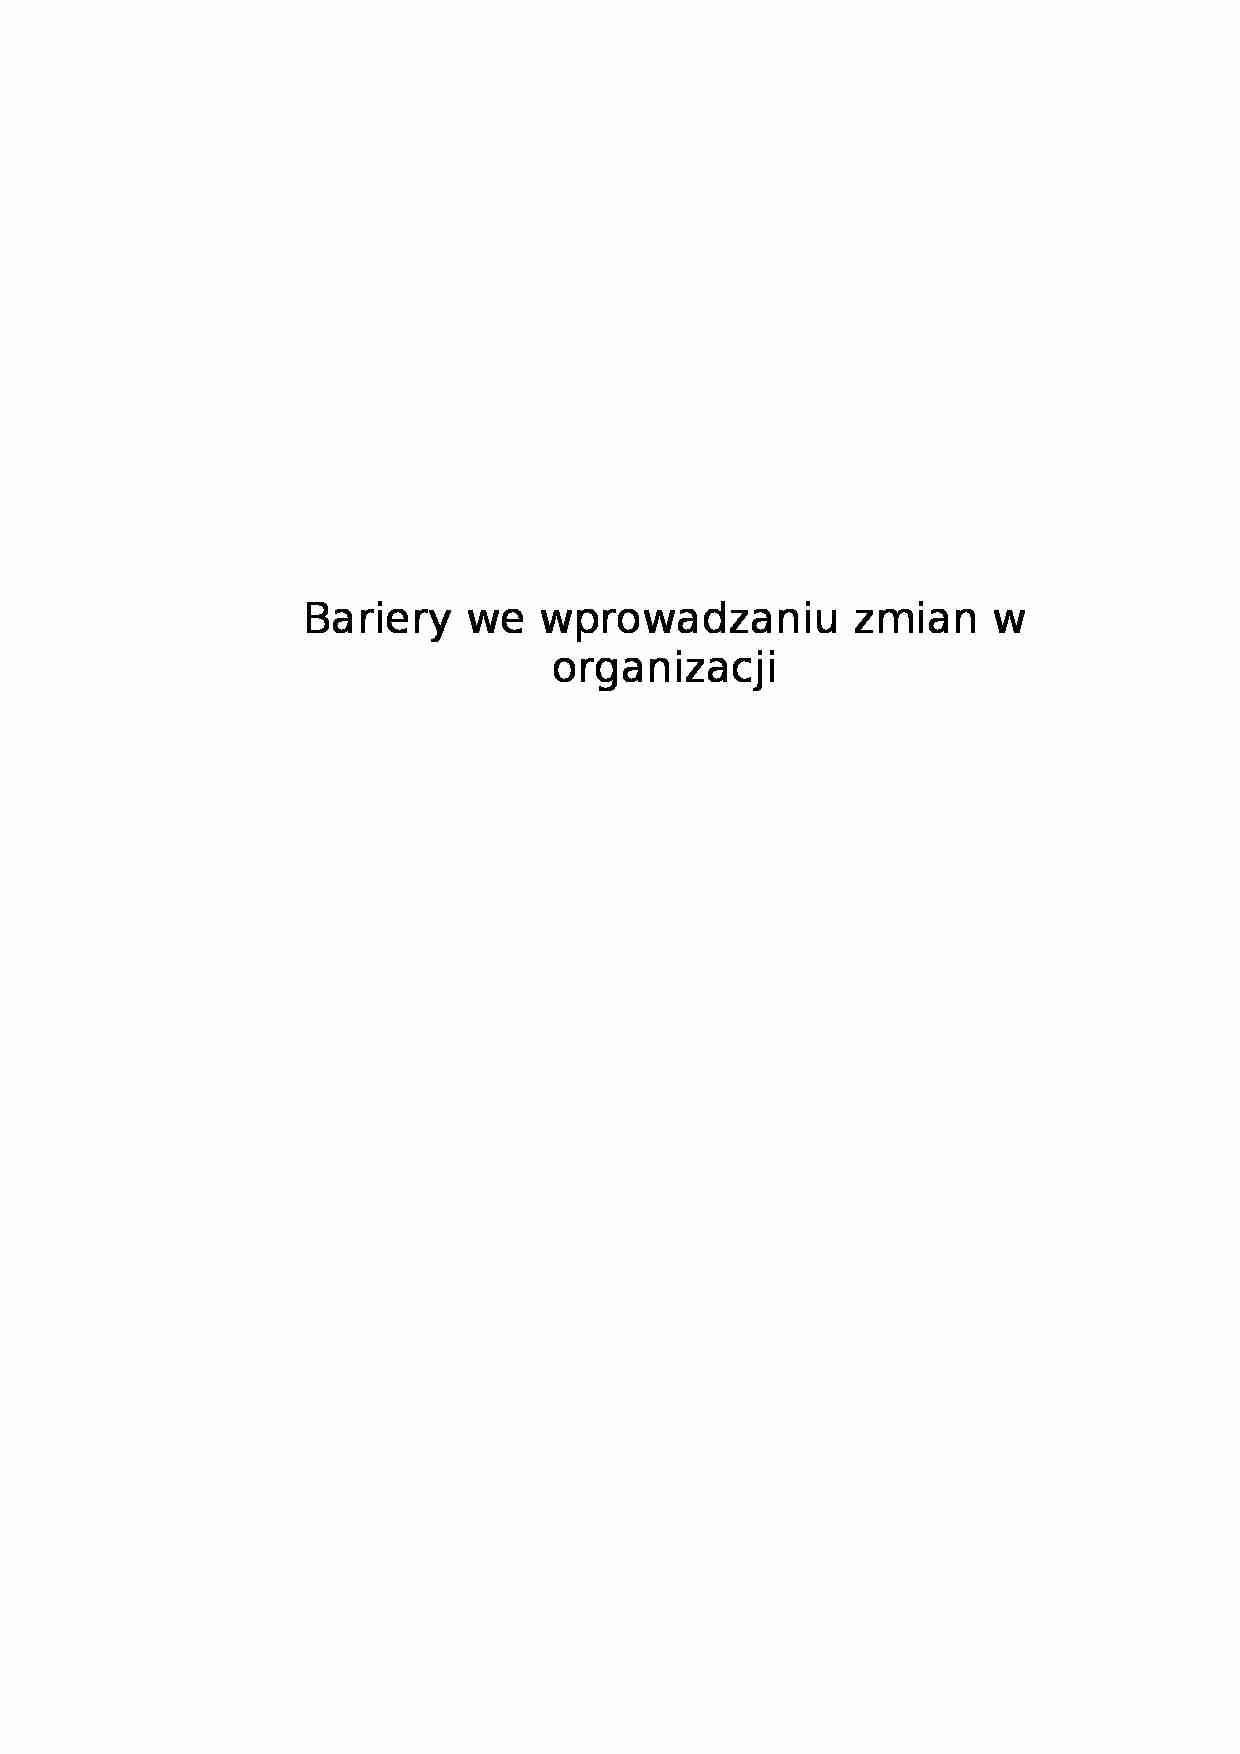 Bariery we wprowadzaniu zmian w organizacji - podstawowe pojęcia - strona 1